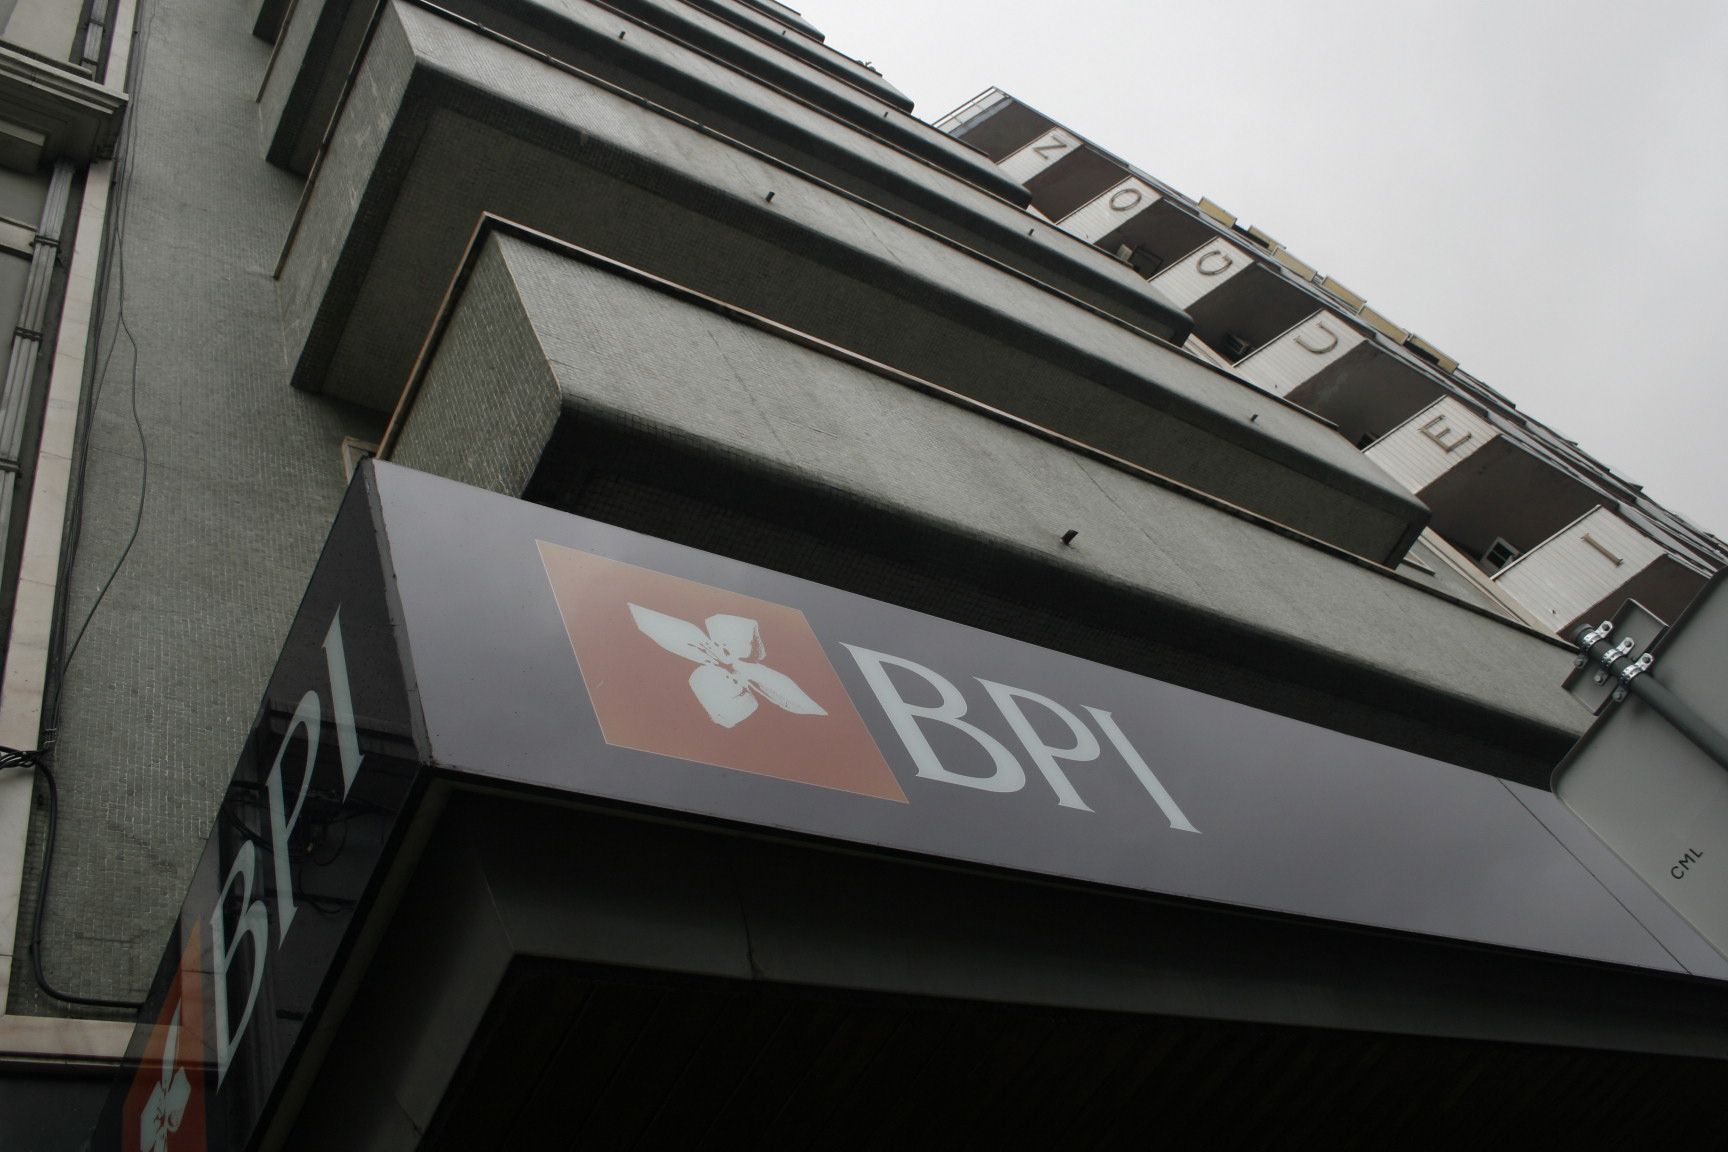 BPI condenado a pagar 400 mil euros a cliente